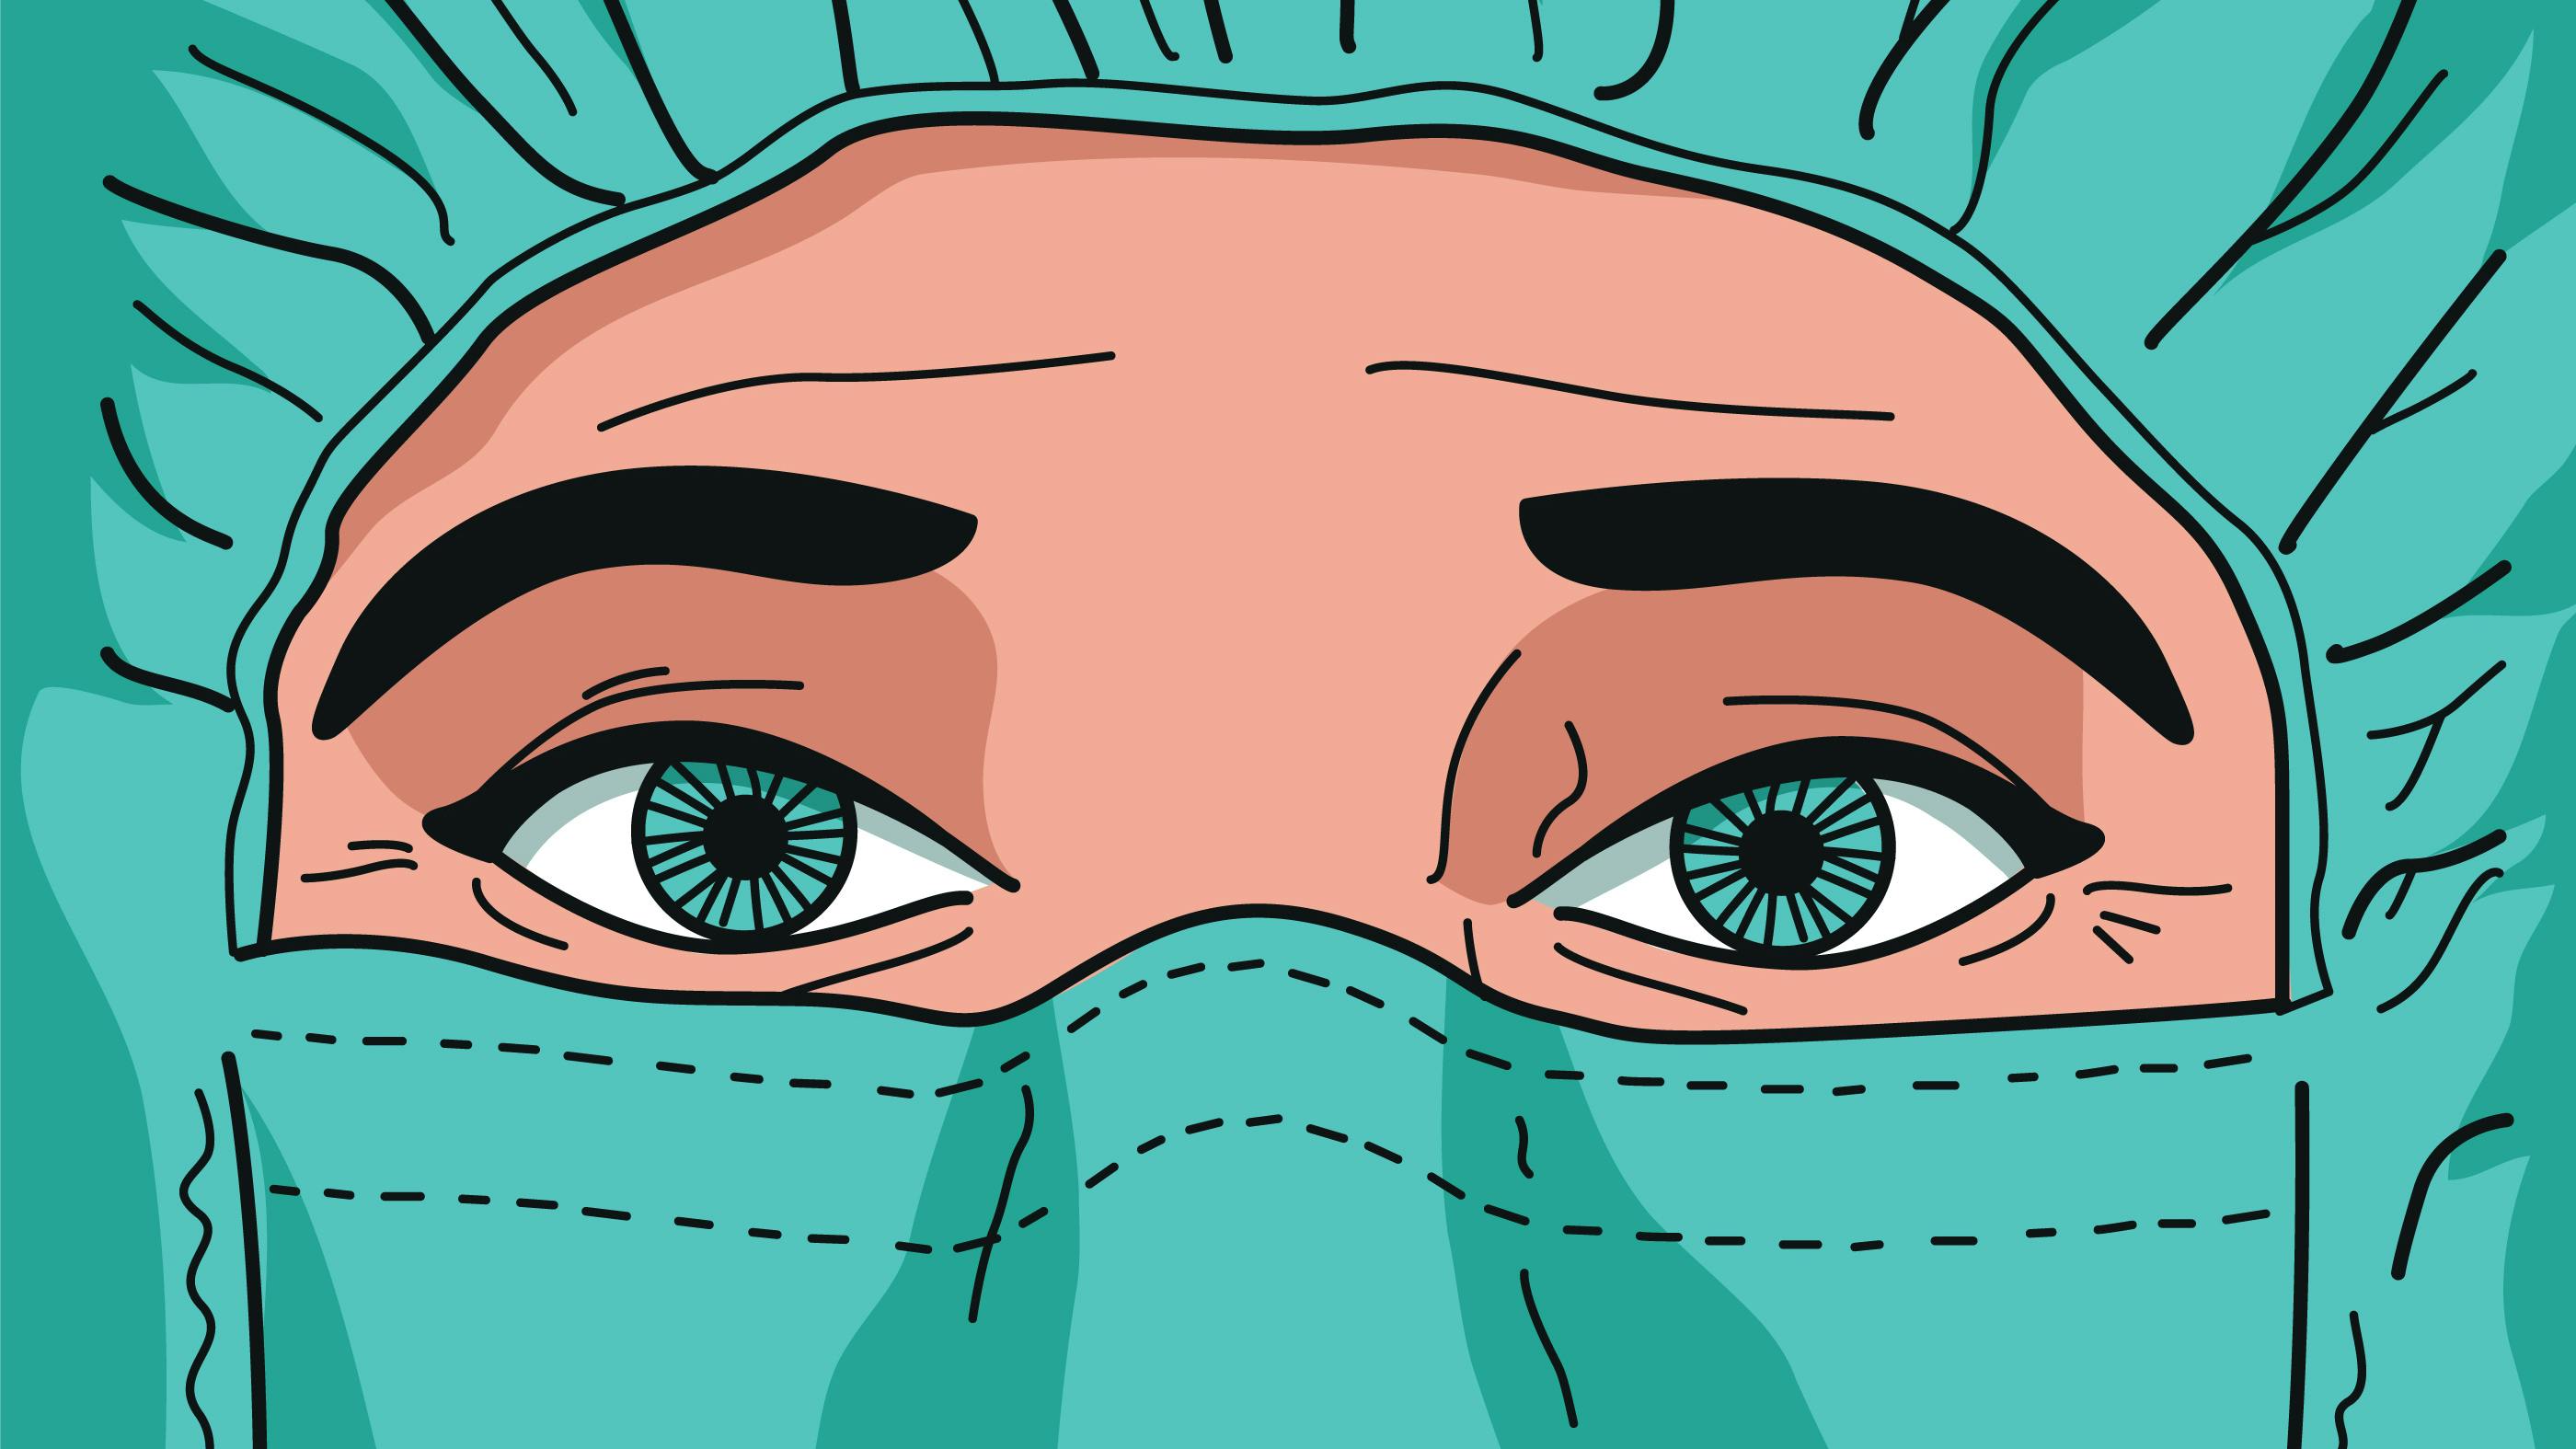 Wir sehen eine Krankenpflege-Person, von der wir nur die Augen sehen, weil der Kopf mit grüner Pflegekleidung bedeckt ist. 